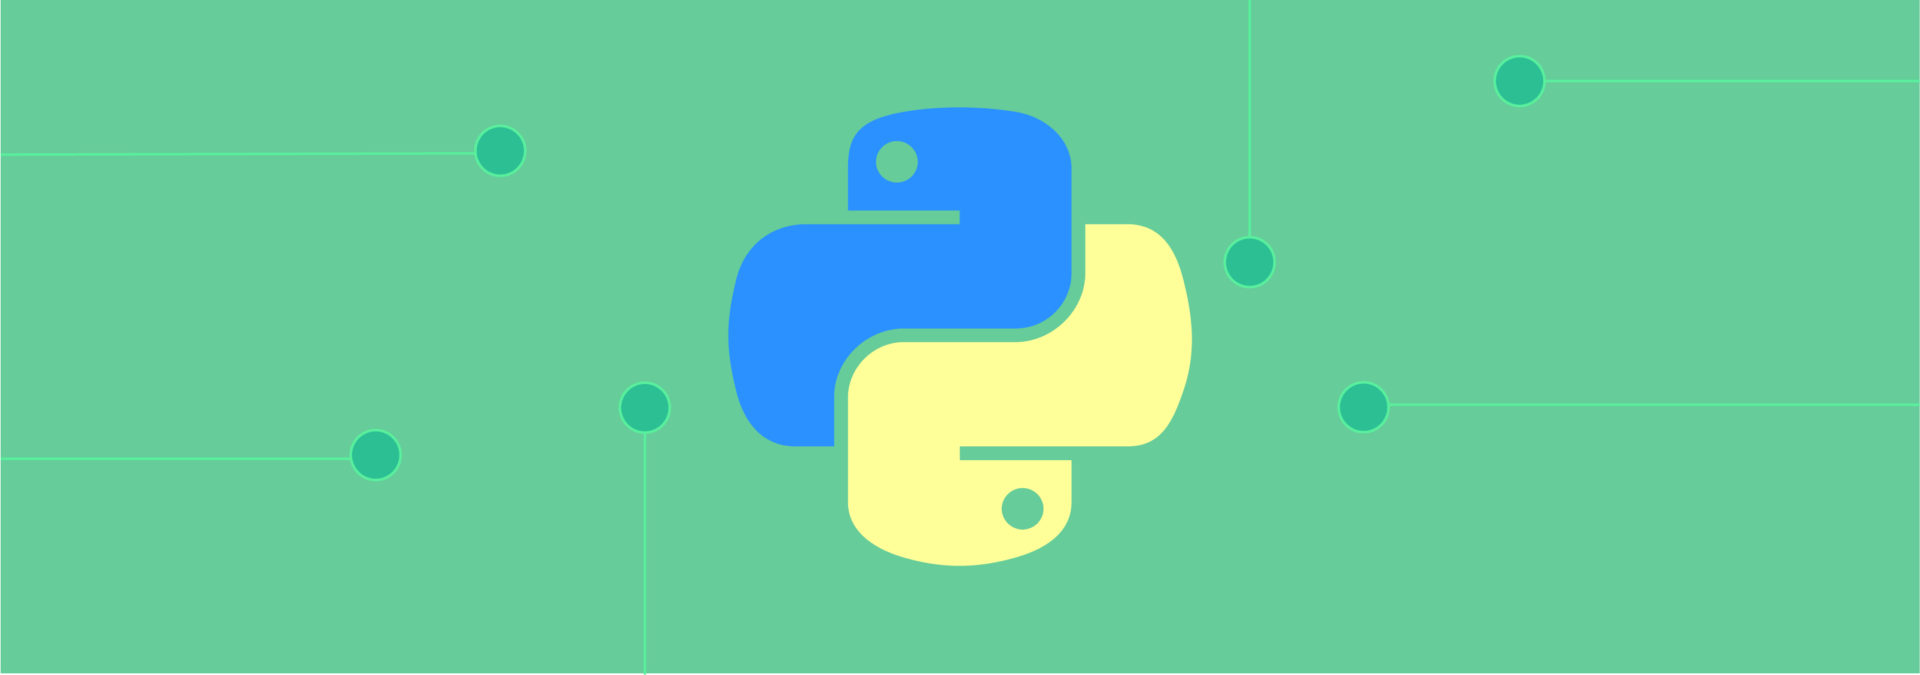 Асинхронное программирование в Python